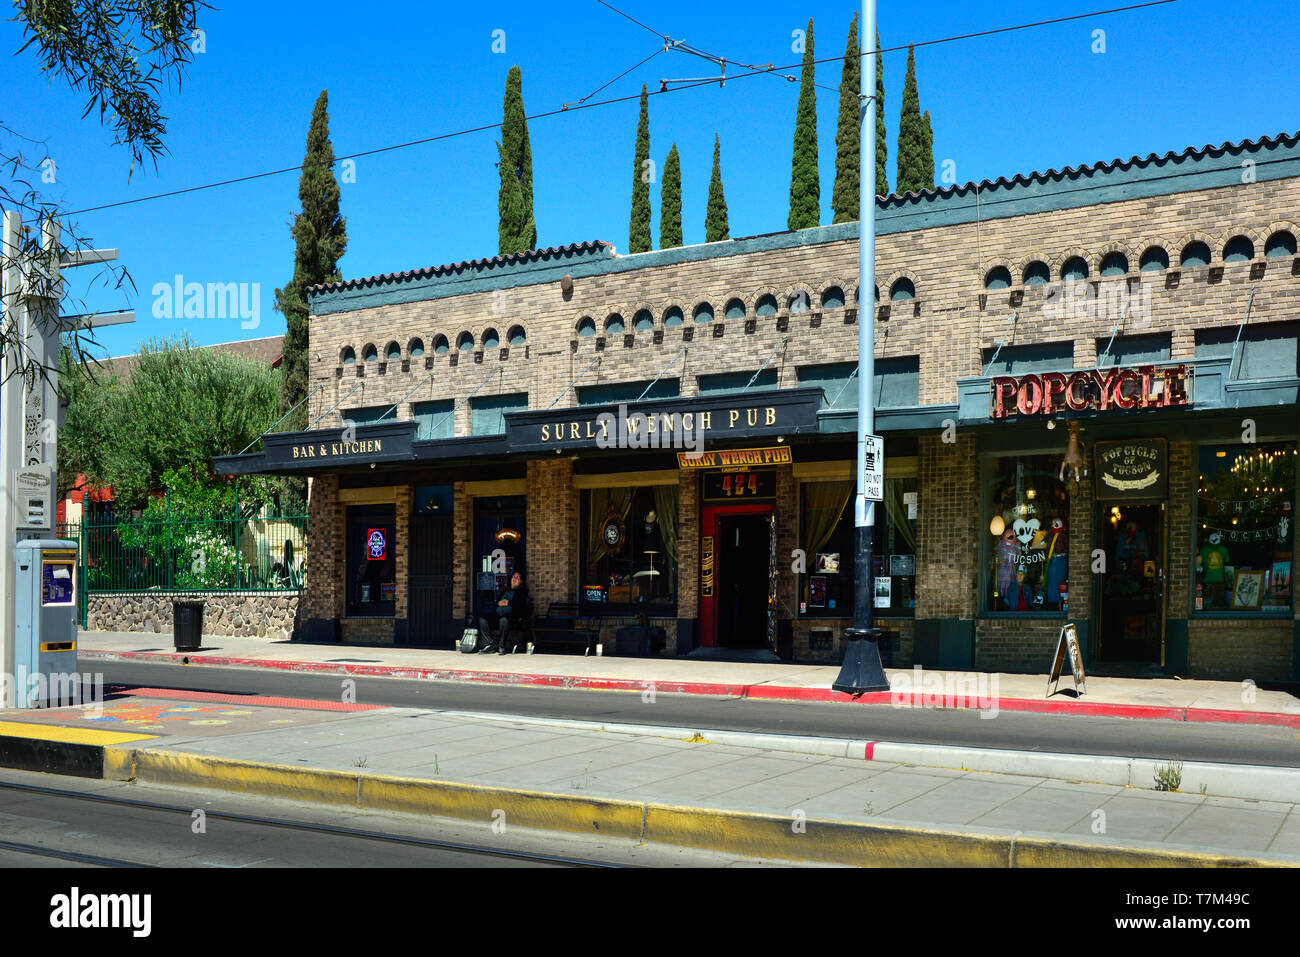 Le bourru Vénom Pub, réputé pour leur musique et de pub, situé à côté d'un arrêt de tramway, sur les lieux historiques de la 4e Avenue à Tucson, AZ Banque D'Images